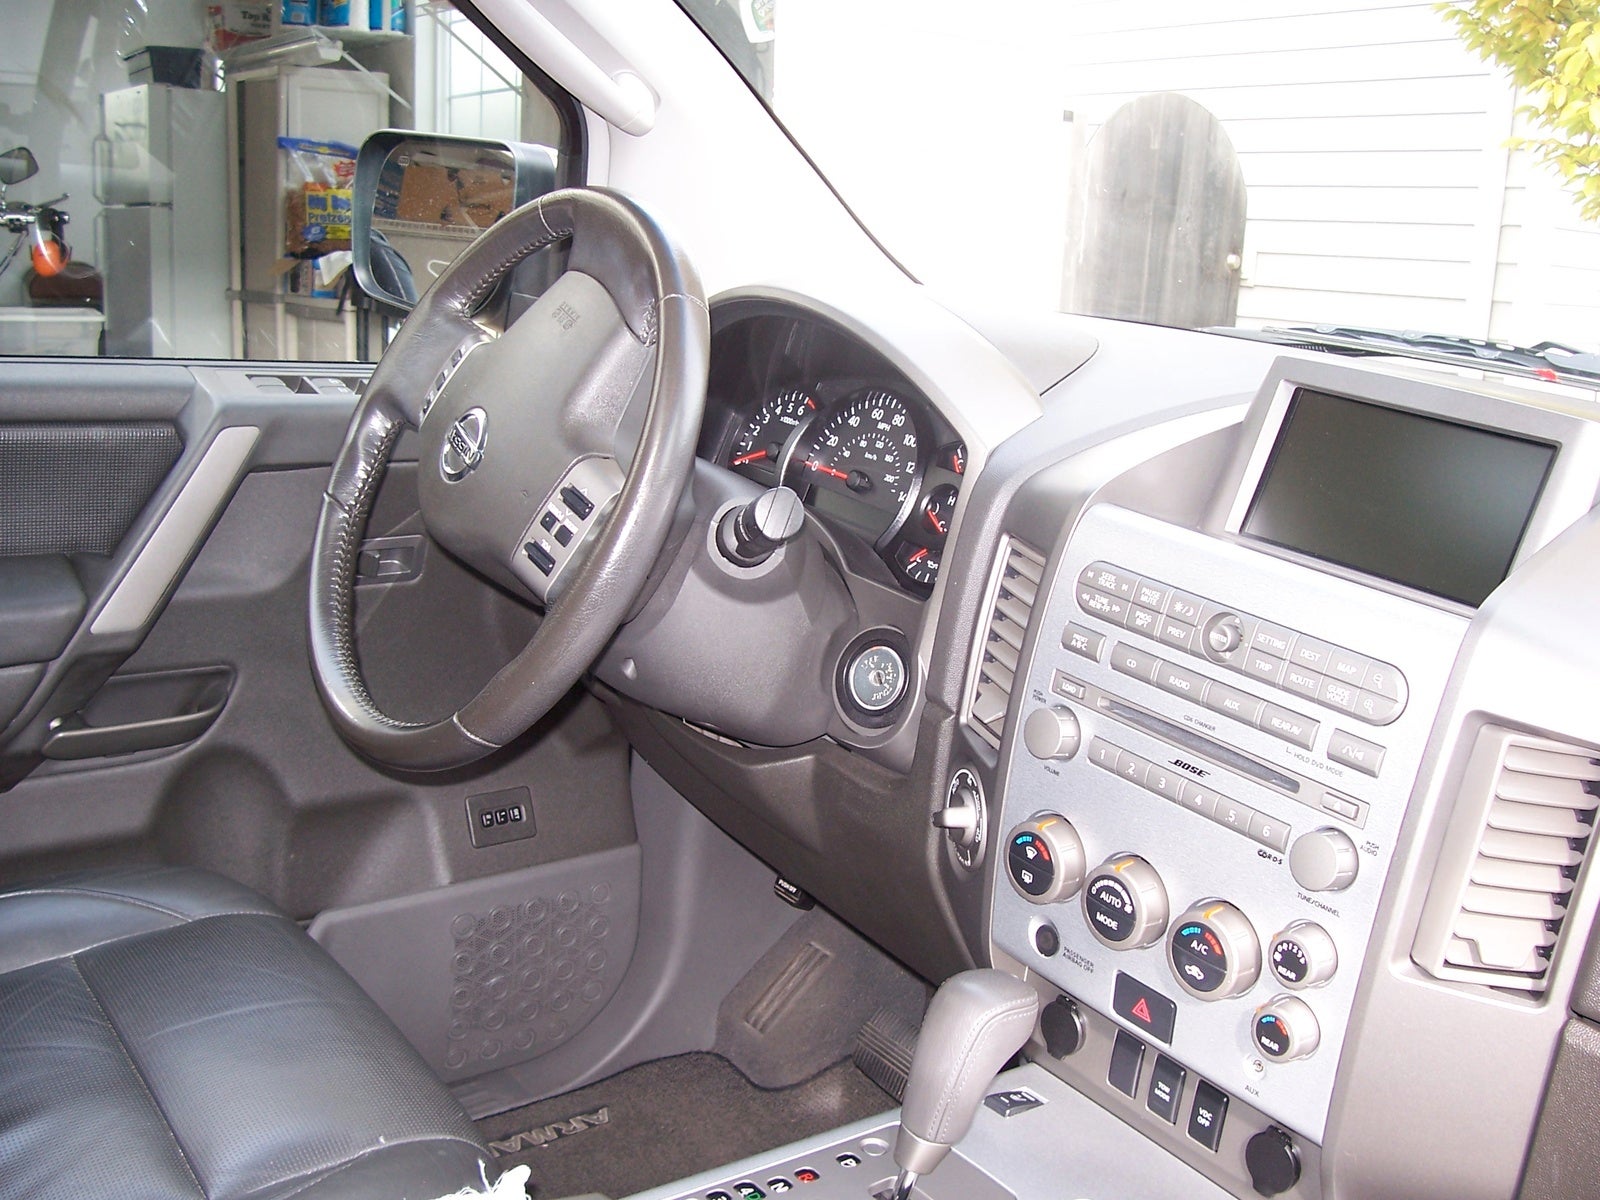 2004 Nissan Armada - Interior Pictures - CarGurus